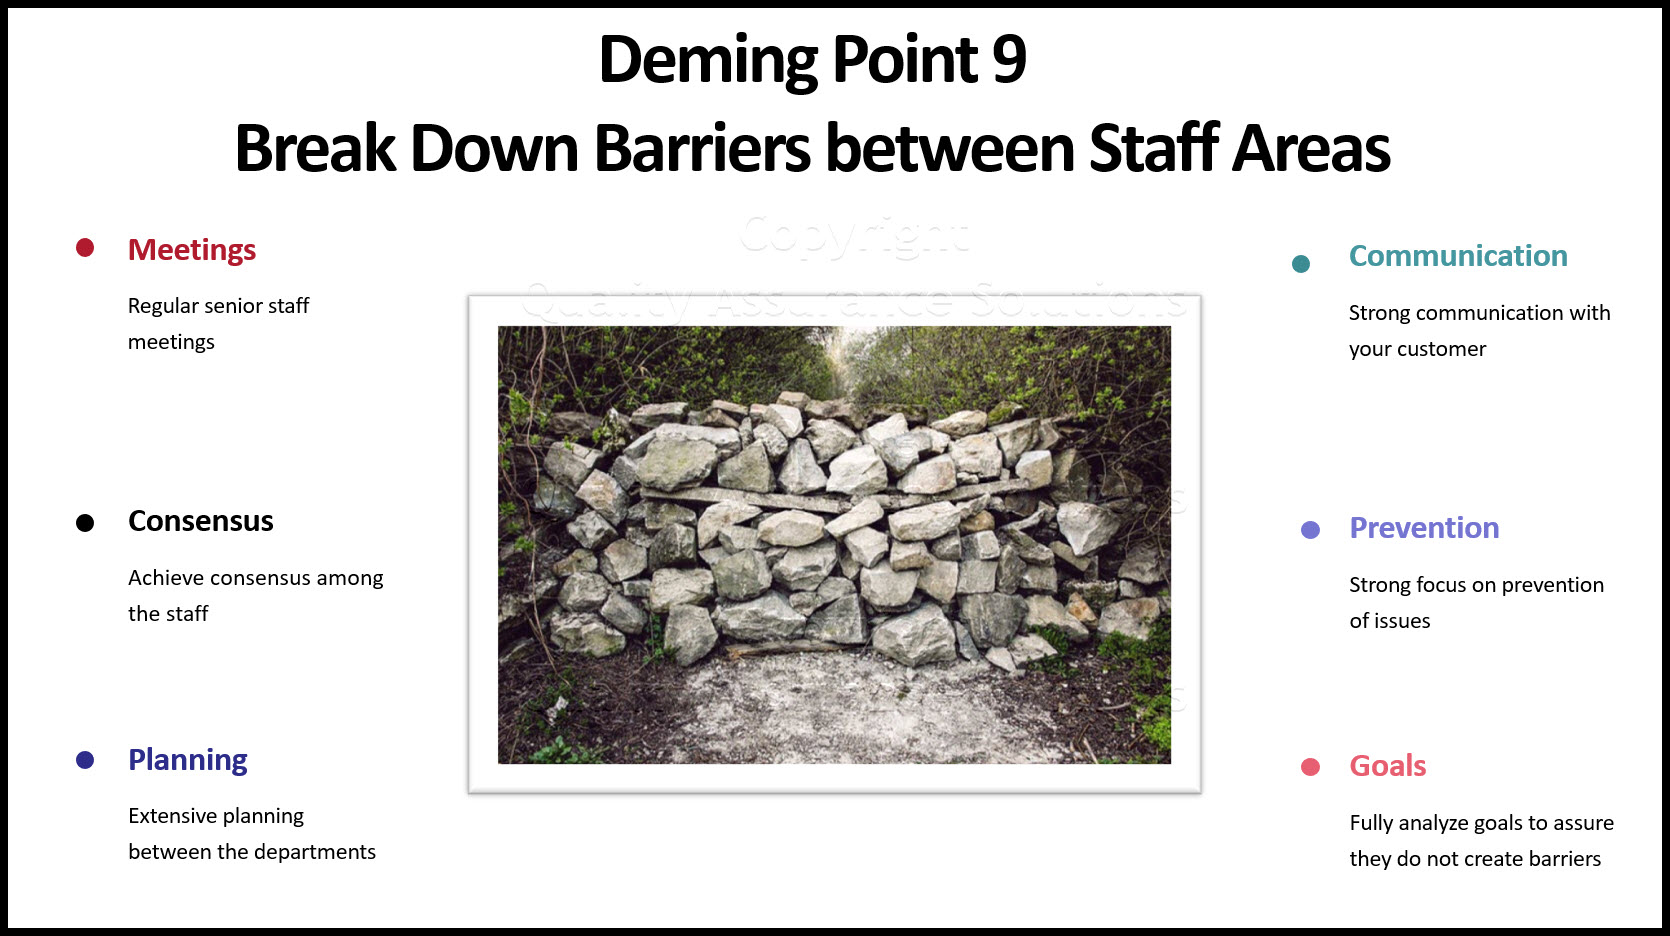 Deming Point 9 focuses on breaking down departmental barriers. 